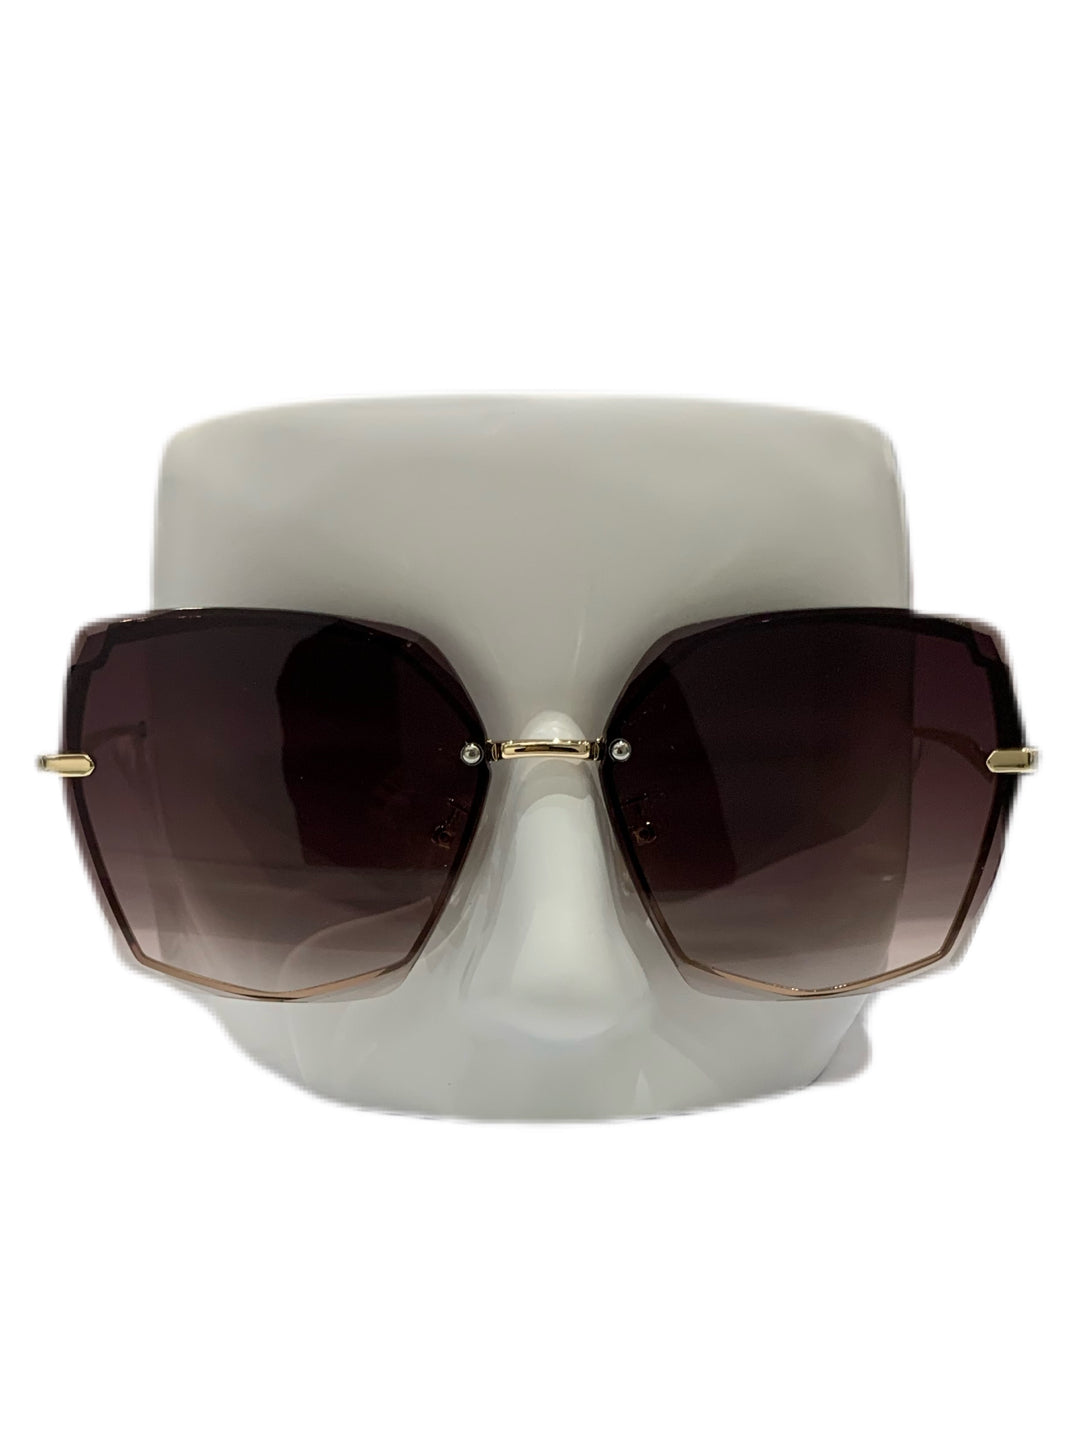 3NY - SOV Sunglasses